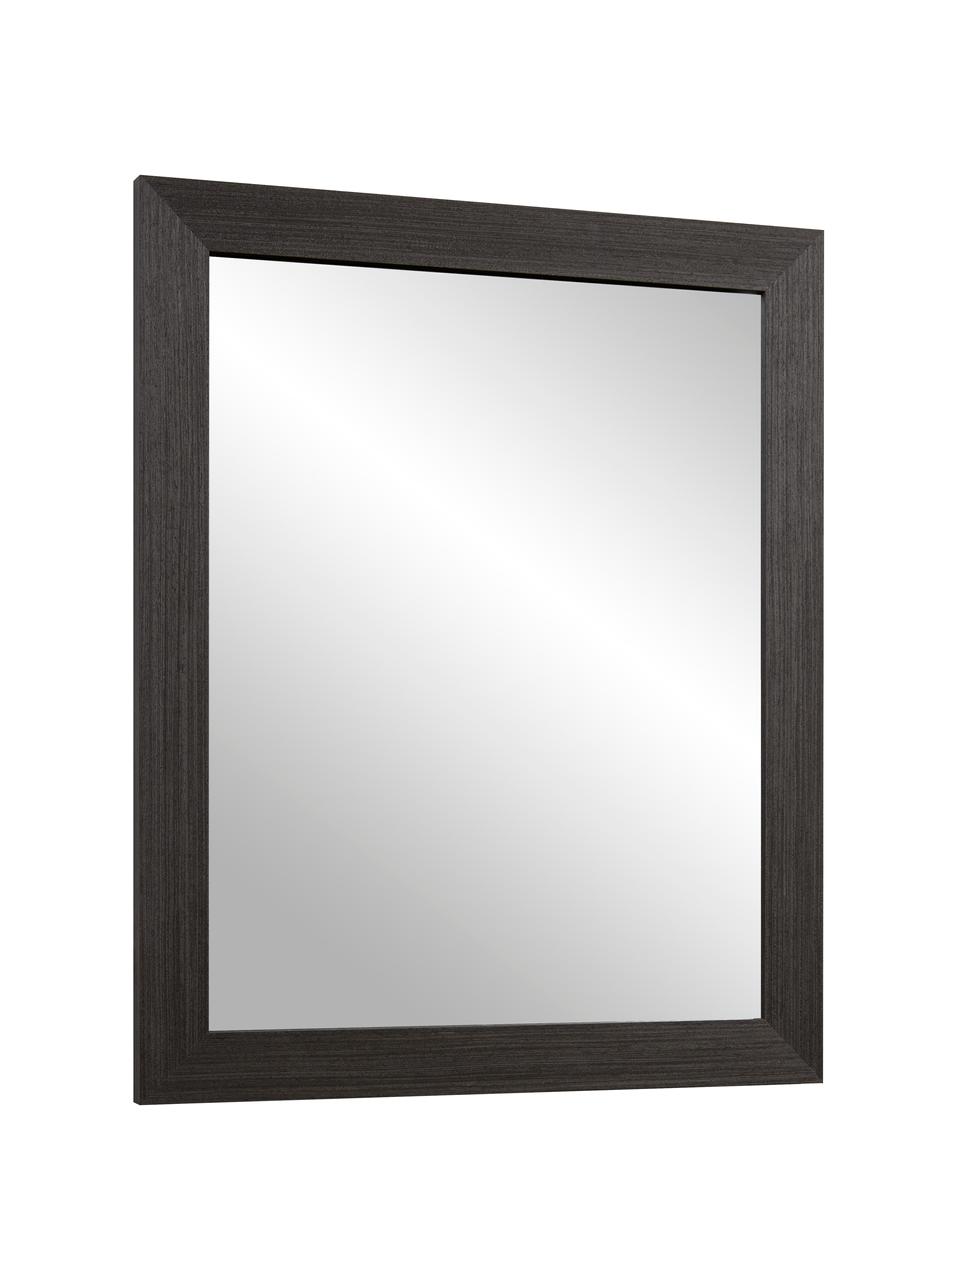 Wandspiegel Wilany mit Holzrahmen, Rahmen: Holz, Spiegelfläche: Spiegelglas, Anthrazit, 47 x 58 cm